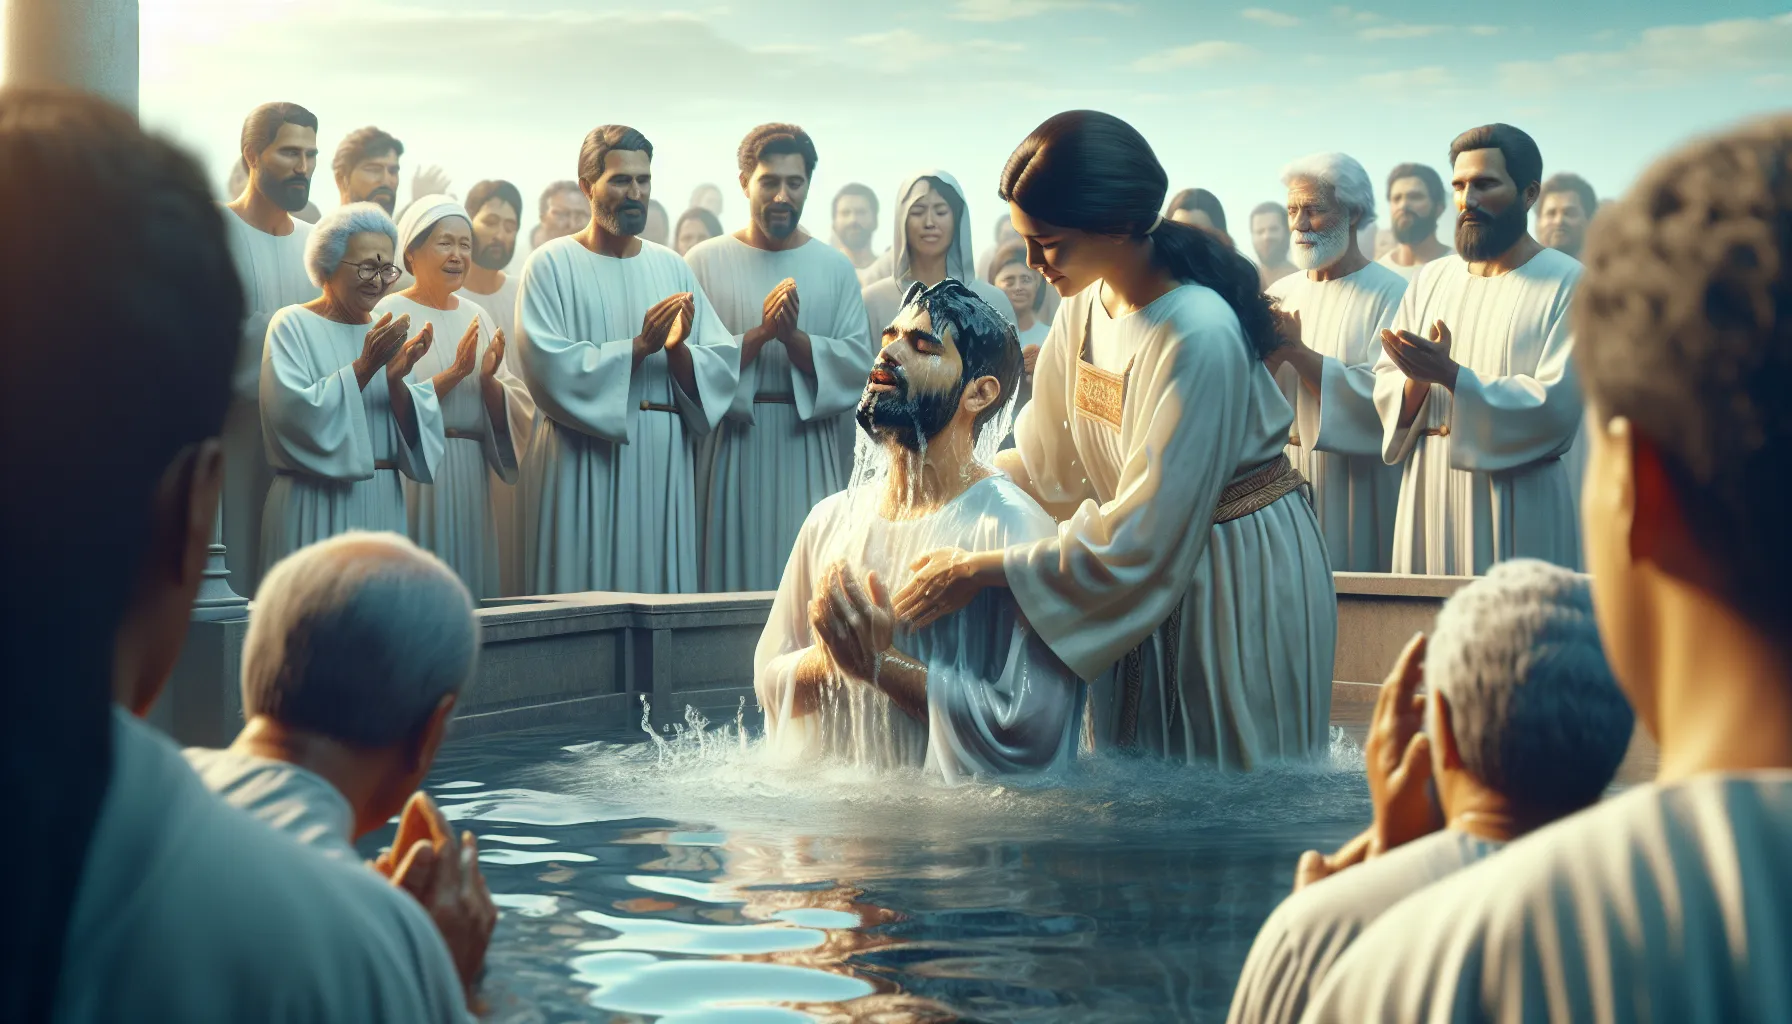 Imagen de una ceremonia de bautismo con una persona siendo sumergida en agua, simbolizando el compromiso de fe en la salvación cristiana.